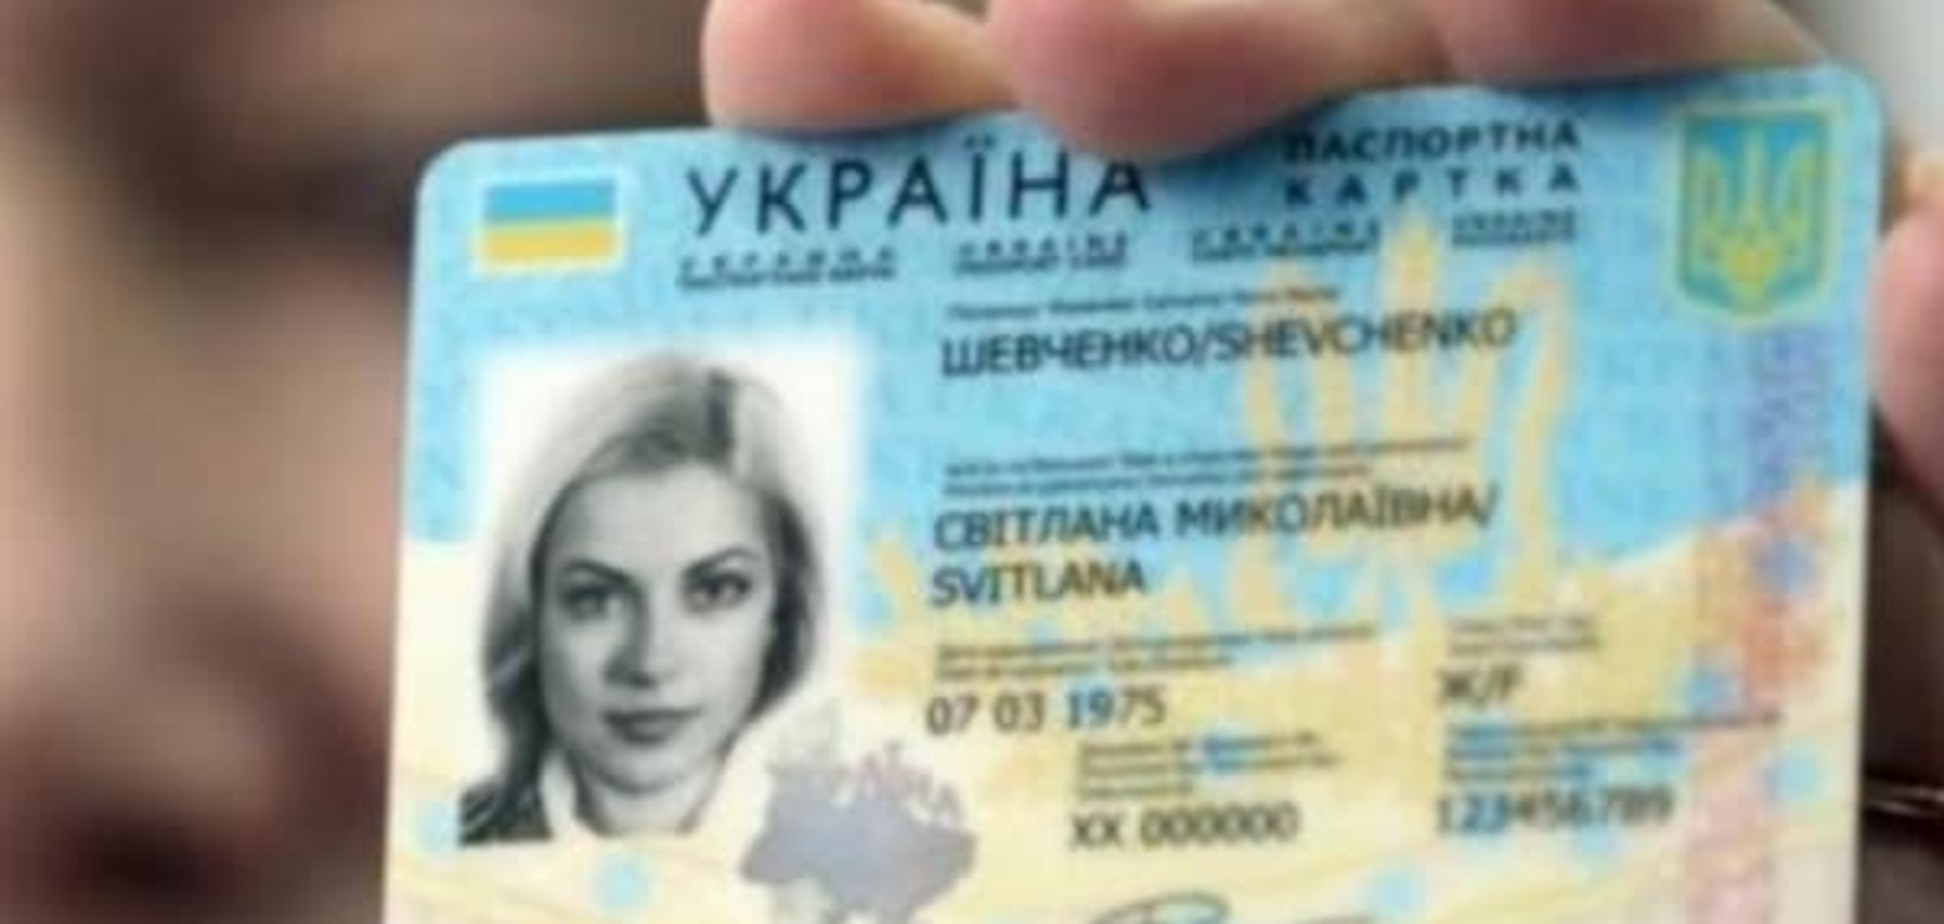 'Мультипаспорт': с 2016 года в Украине ID-карты сменят паспорта